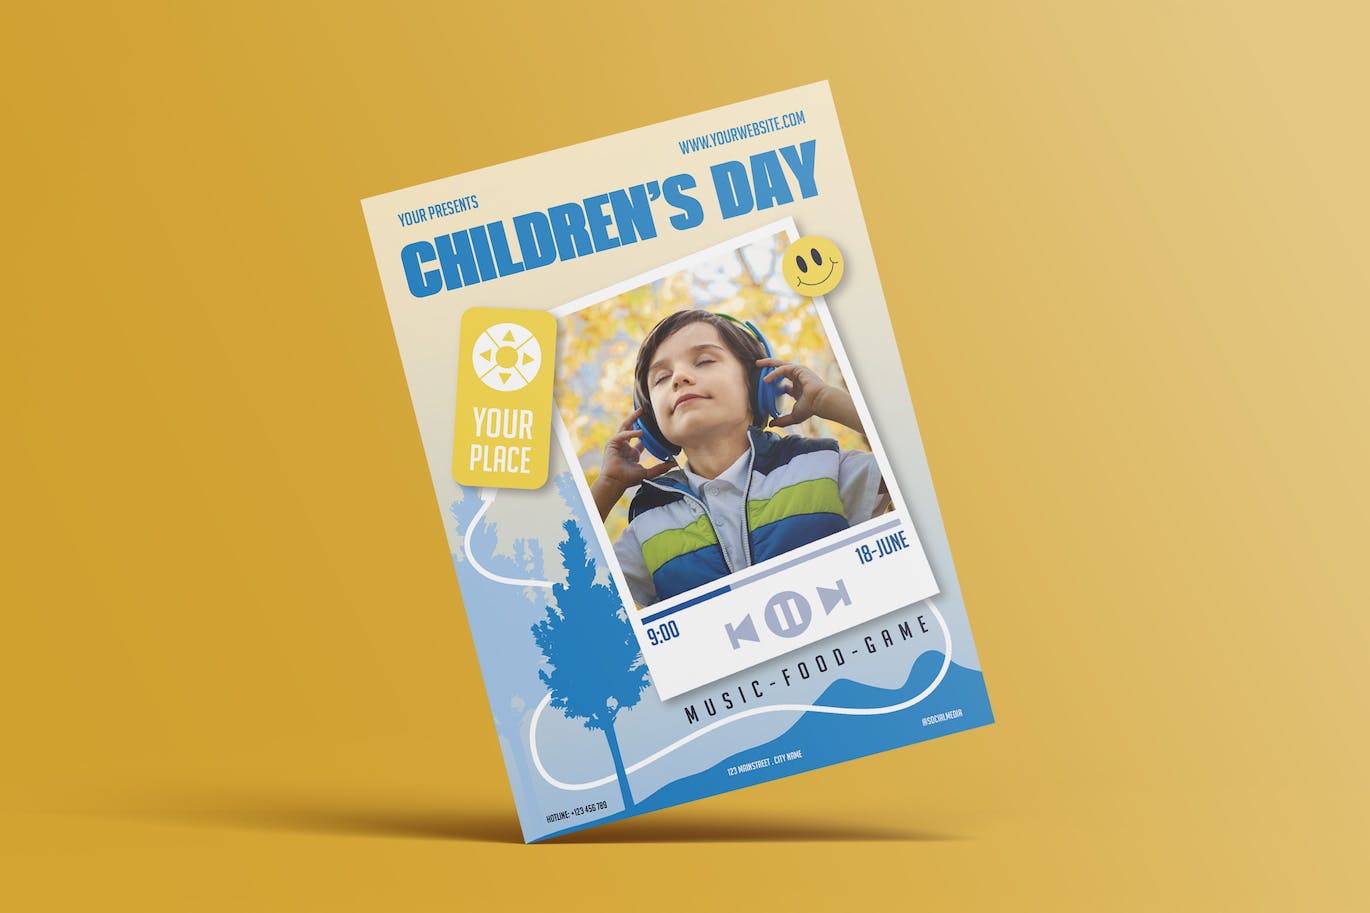 儿童节活动海报设计模板 Happy Children’s Day Flyer 设计素材 第1张